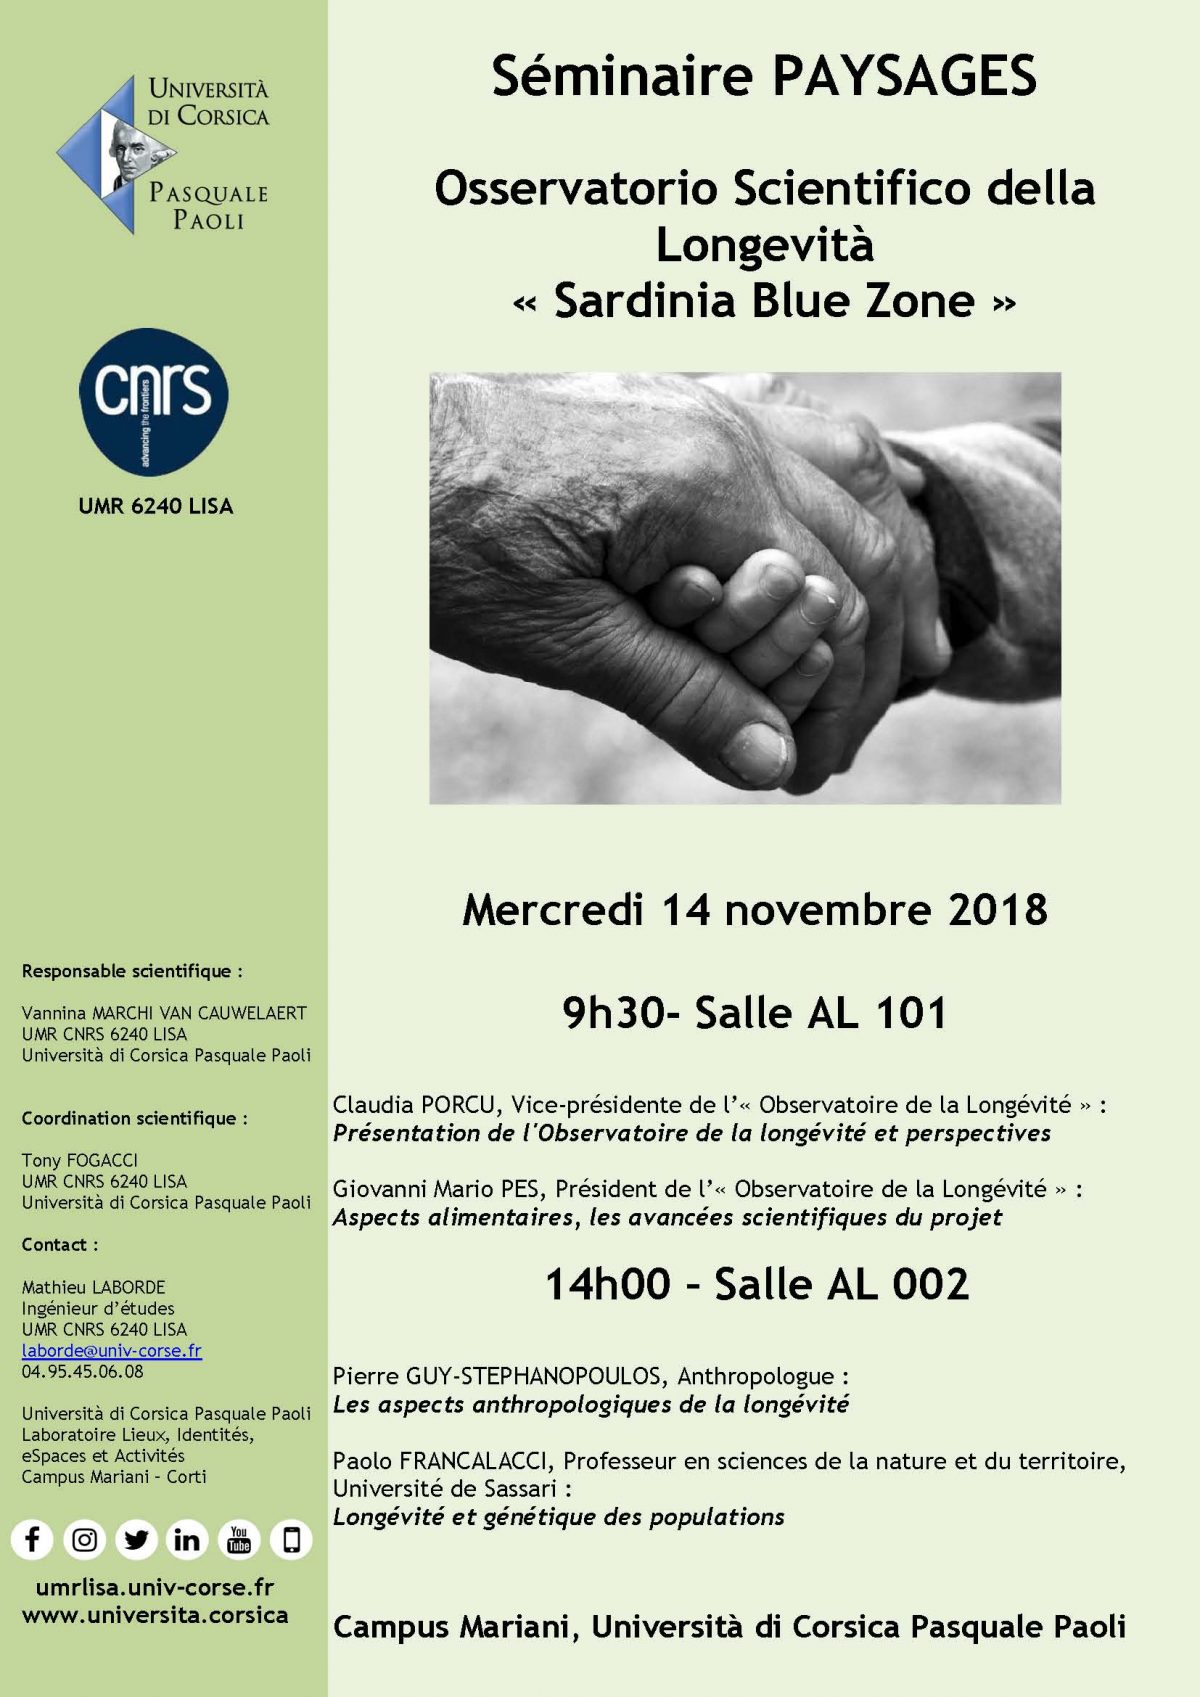 Séminaire « Osservatorio Scientifico della Longevità « Sardinia Blue Zone » »